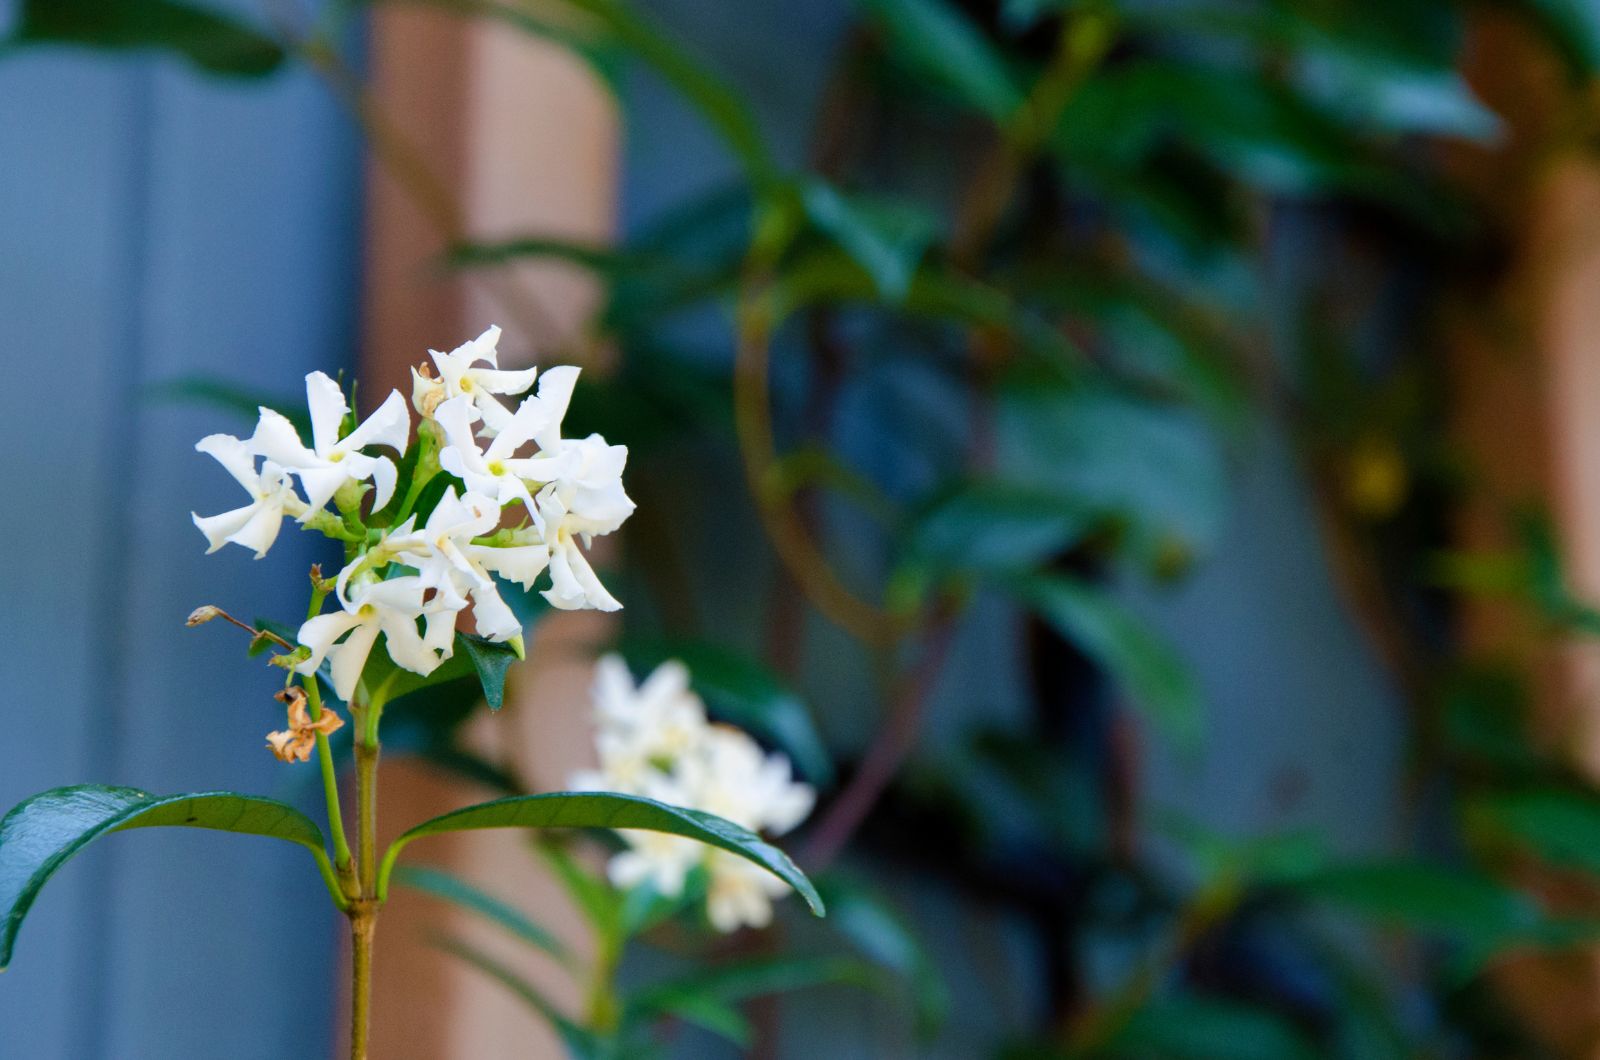 star jasmine in bloom